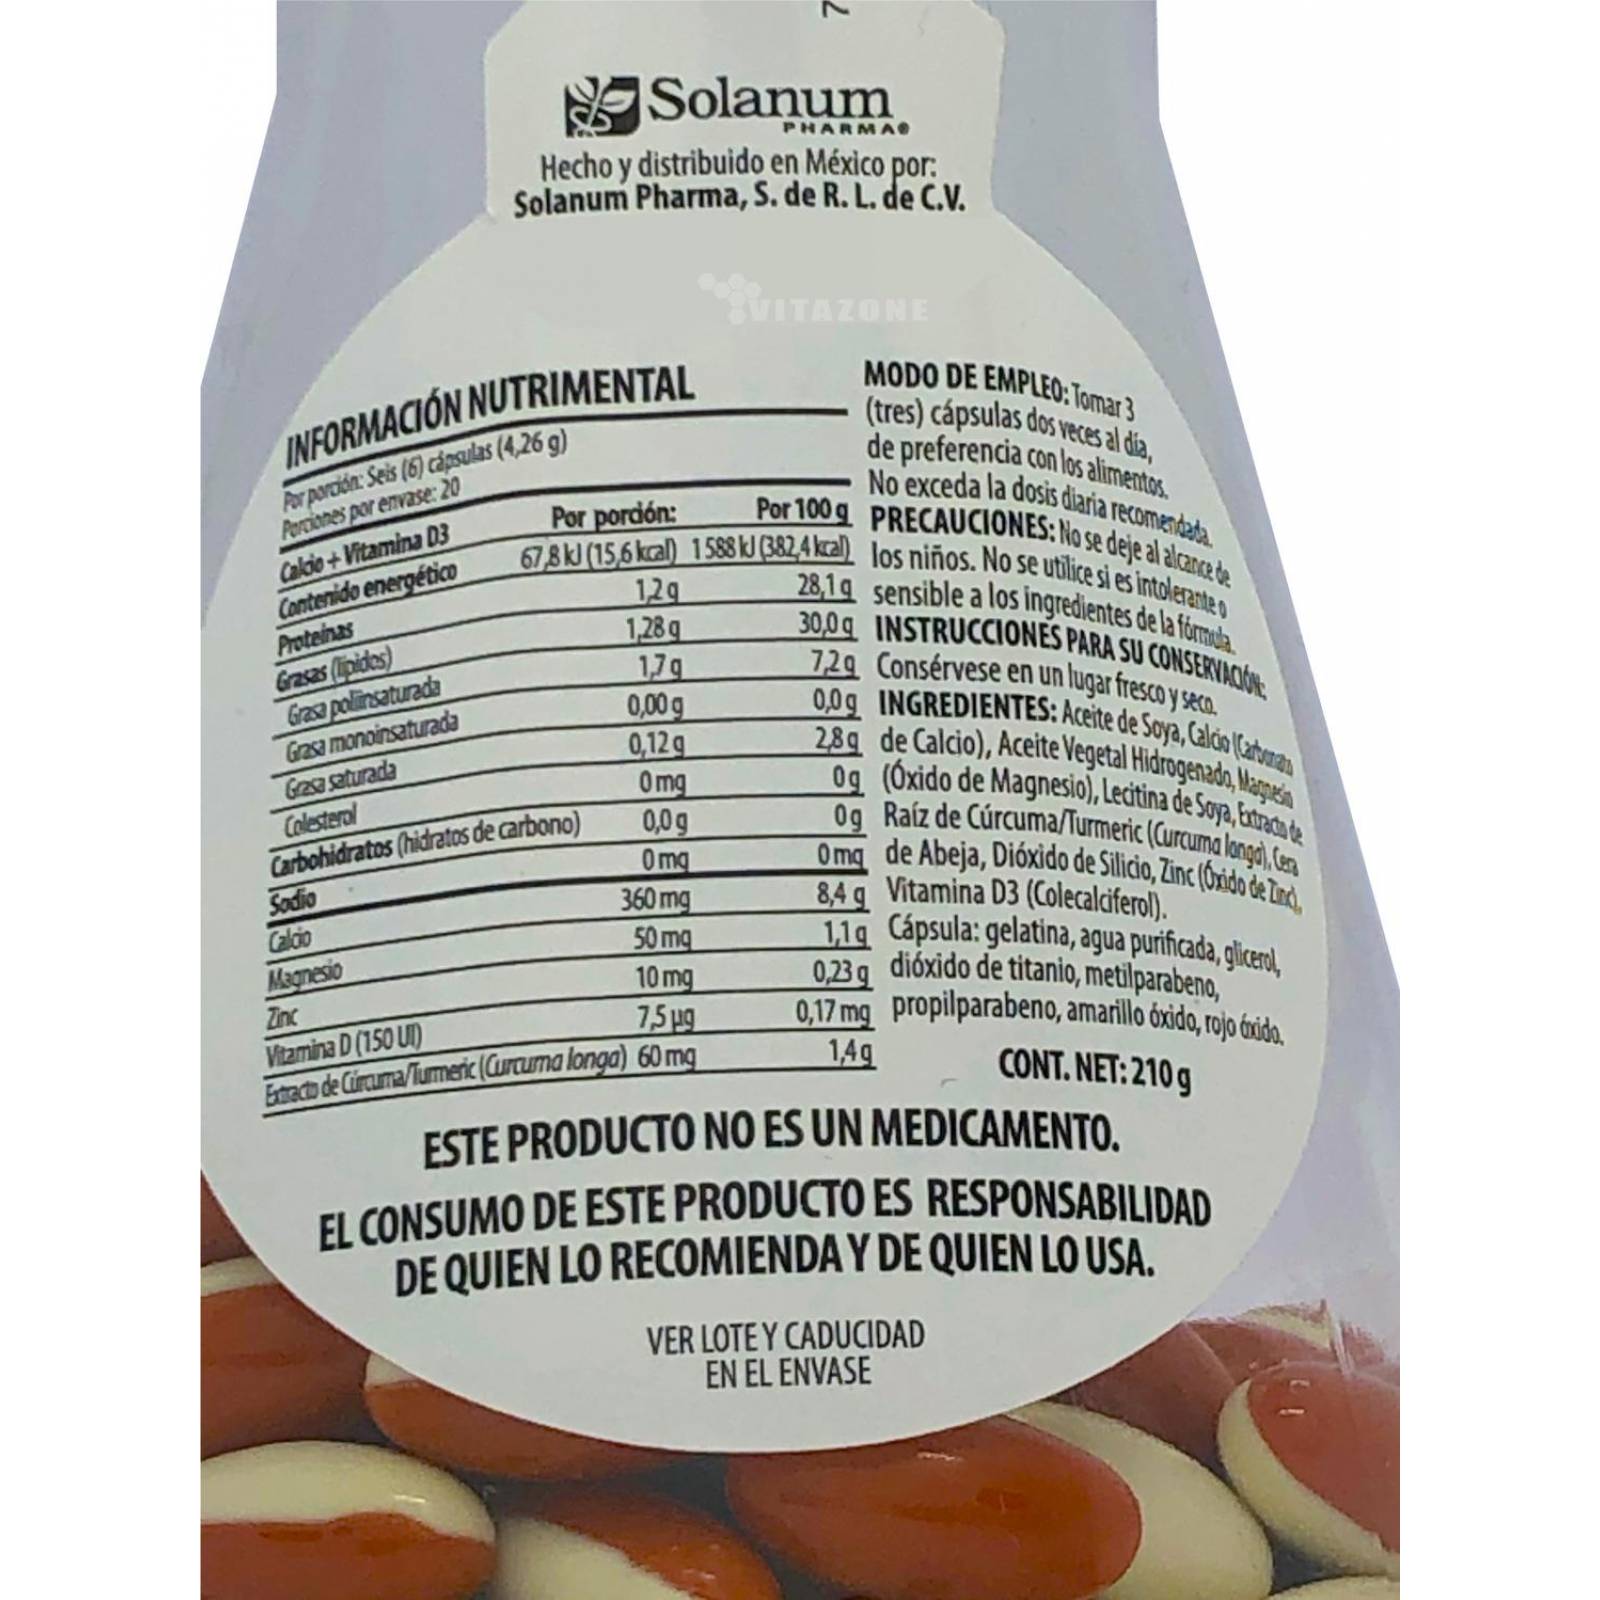 Calcio Vitamina D3 y Cúrcuma 120 minicaps Solanum 